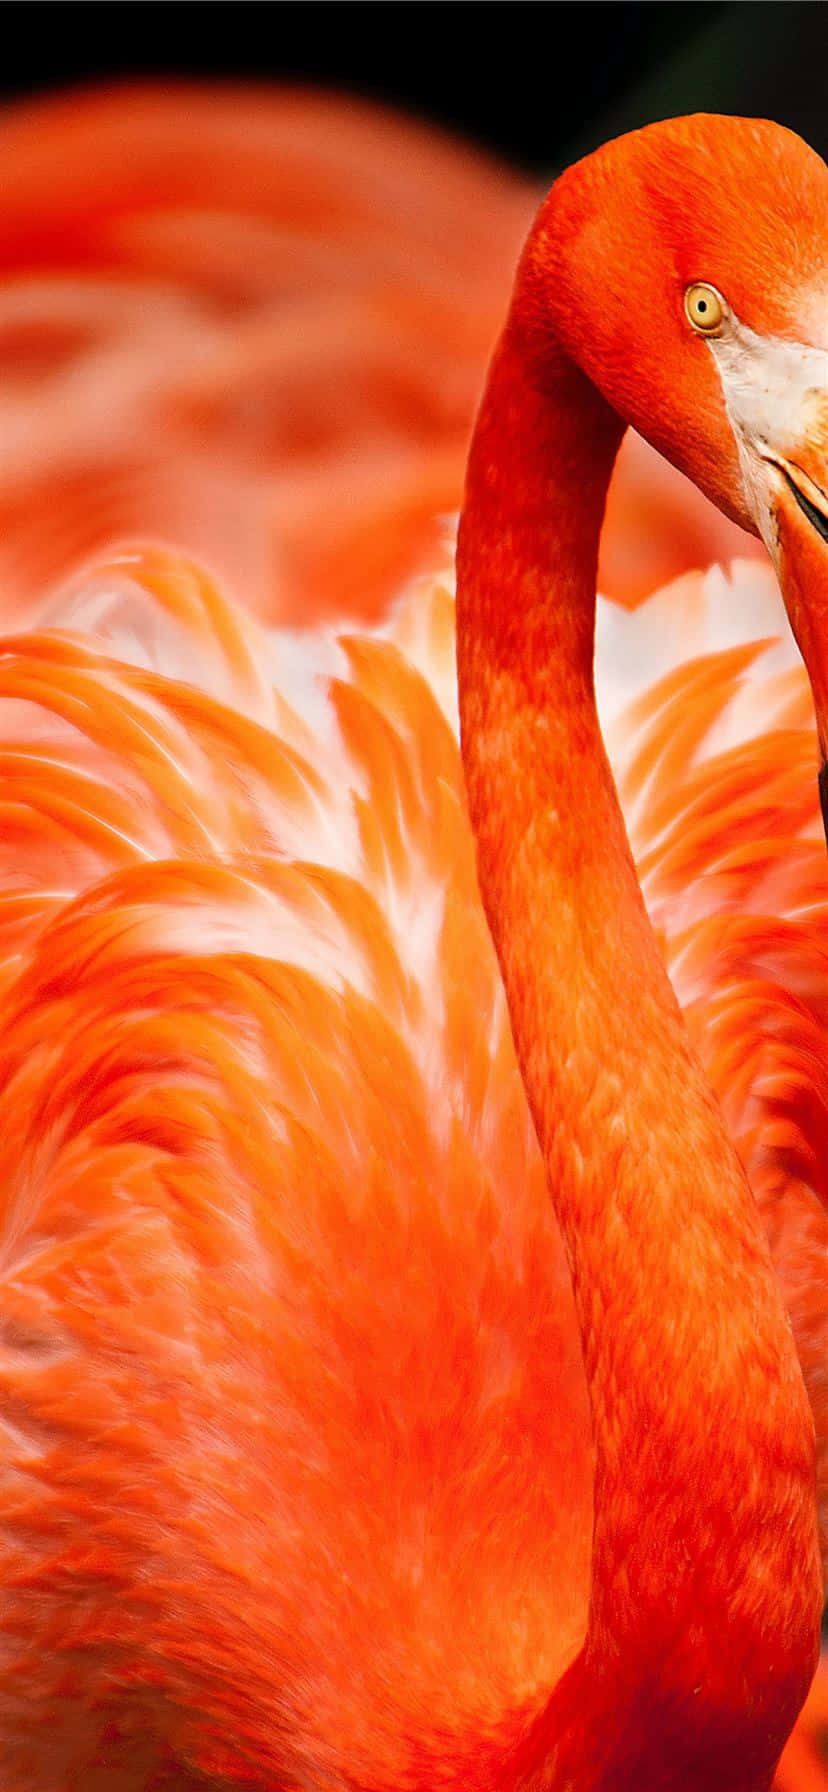 Verbringezeit Im Paradies Mit Dieser Einzigartigen Fotografie Eines Flamingos Am Tag Wallpaper